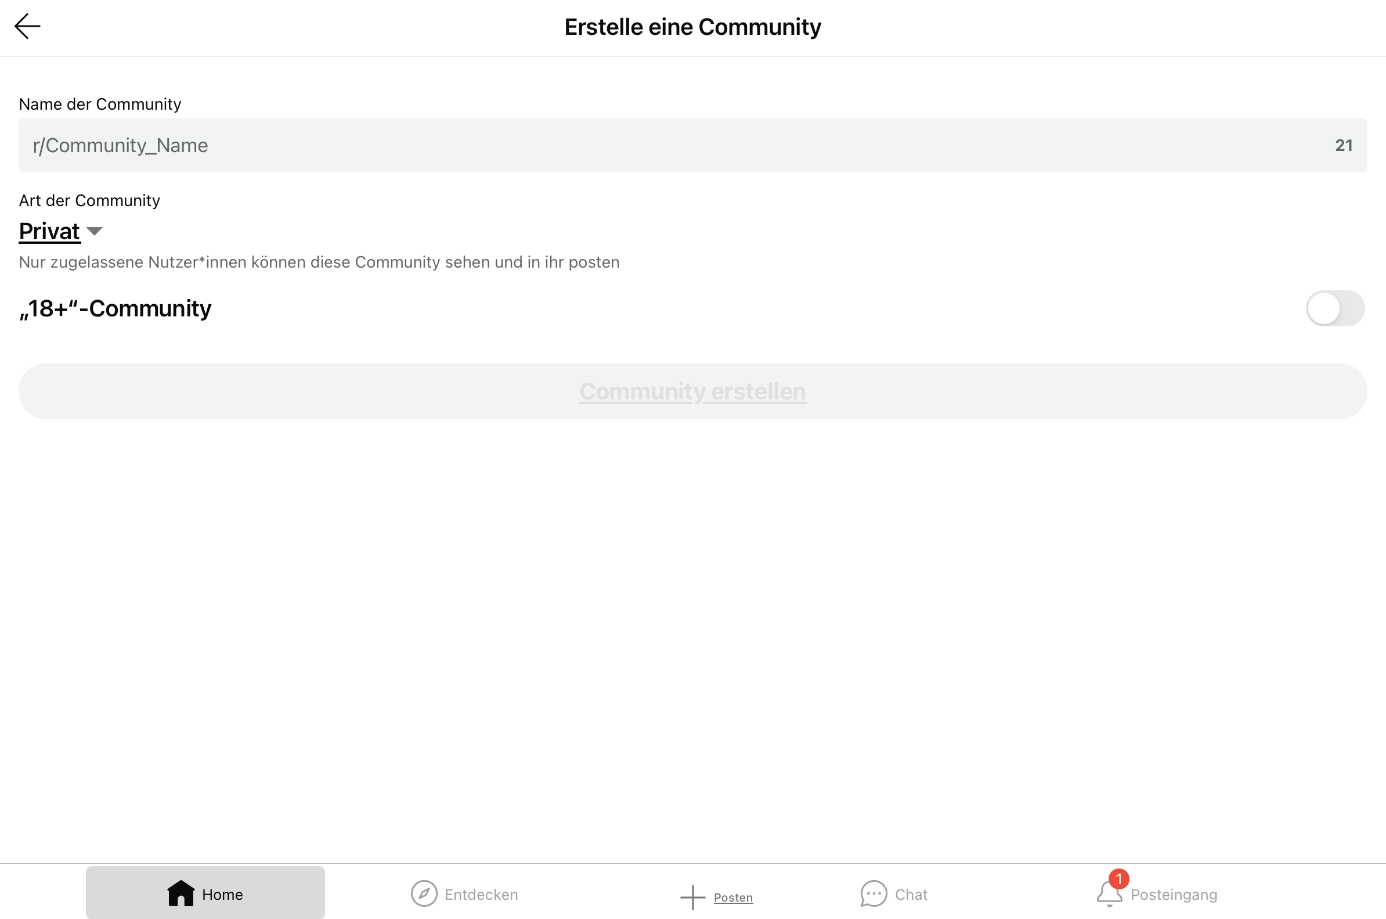 iPad-Screenshot der Community-Erstellung auf der Reddit-App